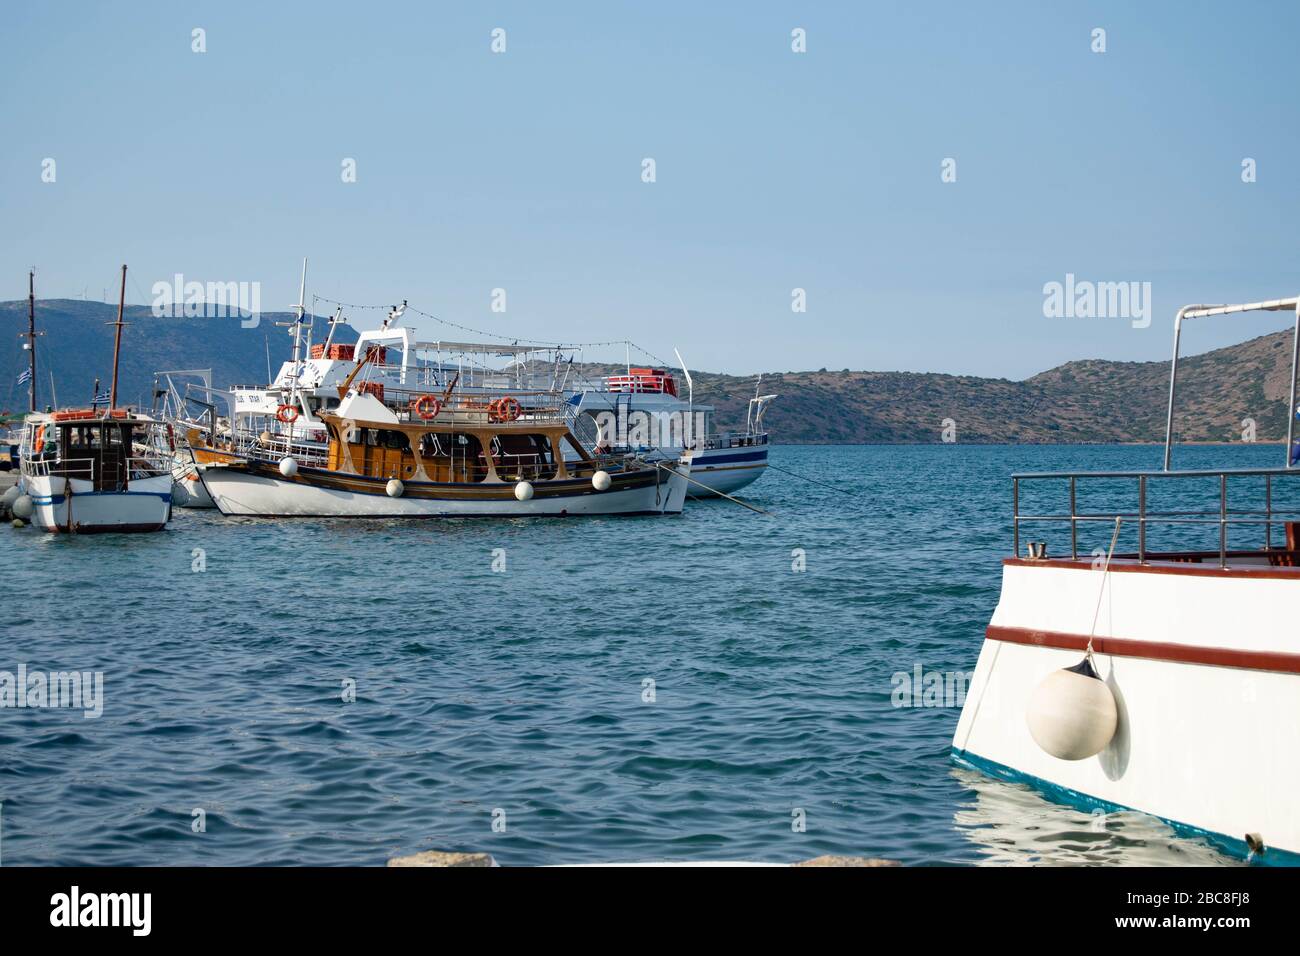 Petits bateaux de loisirs au large de la côte de l'île grecque de Crète, avec l'arrière d'un petit bateau au premier plan Banque D'Images